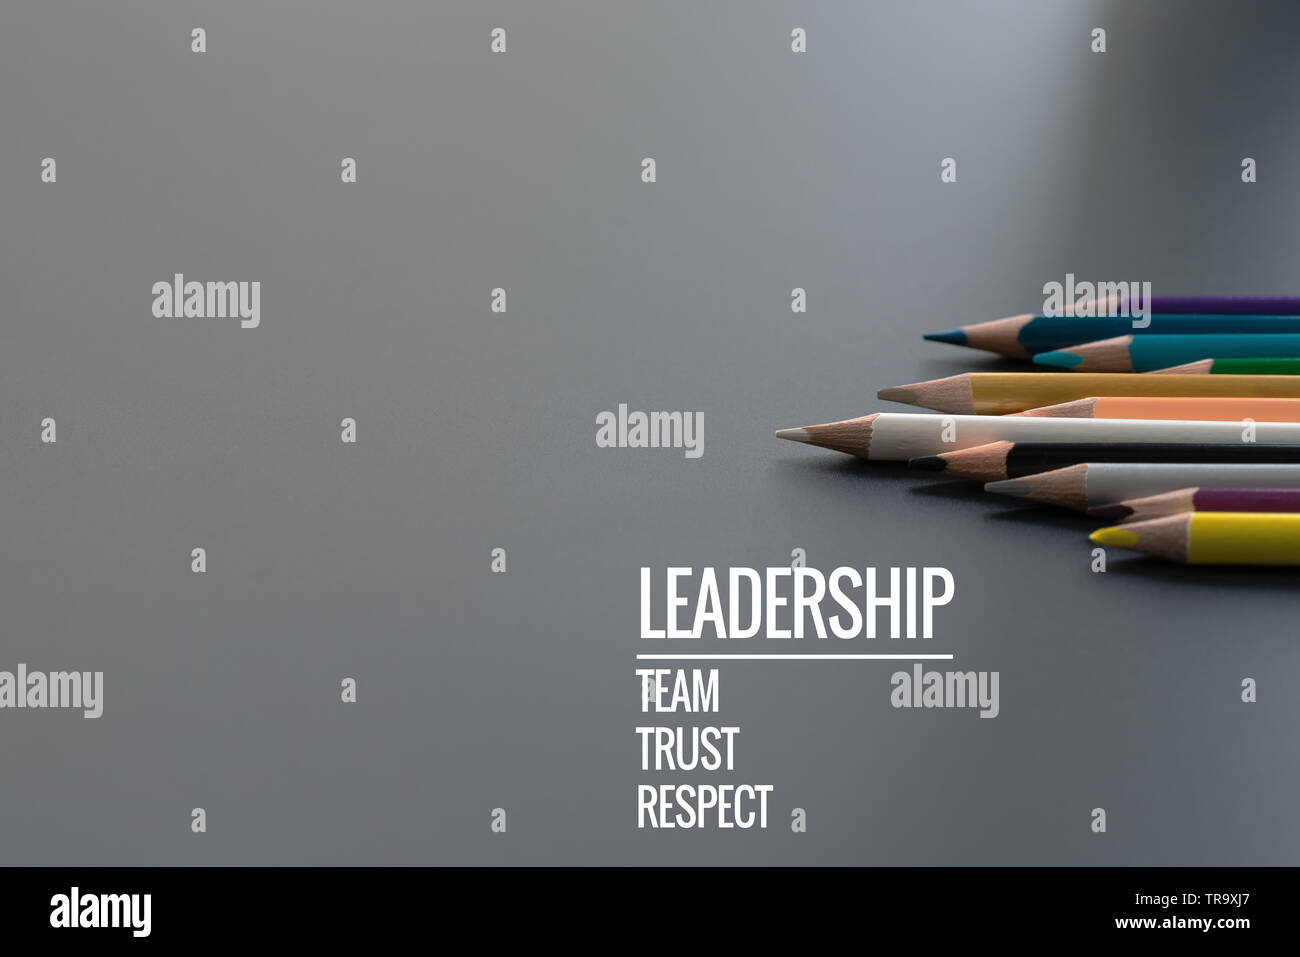 Führung Business Konzept. Farbe Gold bleistiftmine andere Farbe mit Wort,  Führung, Team, Vertrauen und Respekt auf schwarzem Hintergrund  Stockfotografie - Alamy